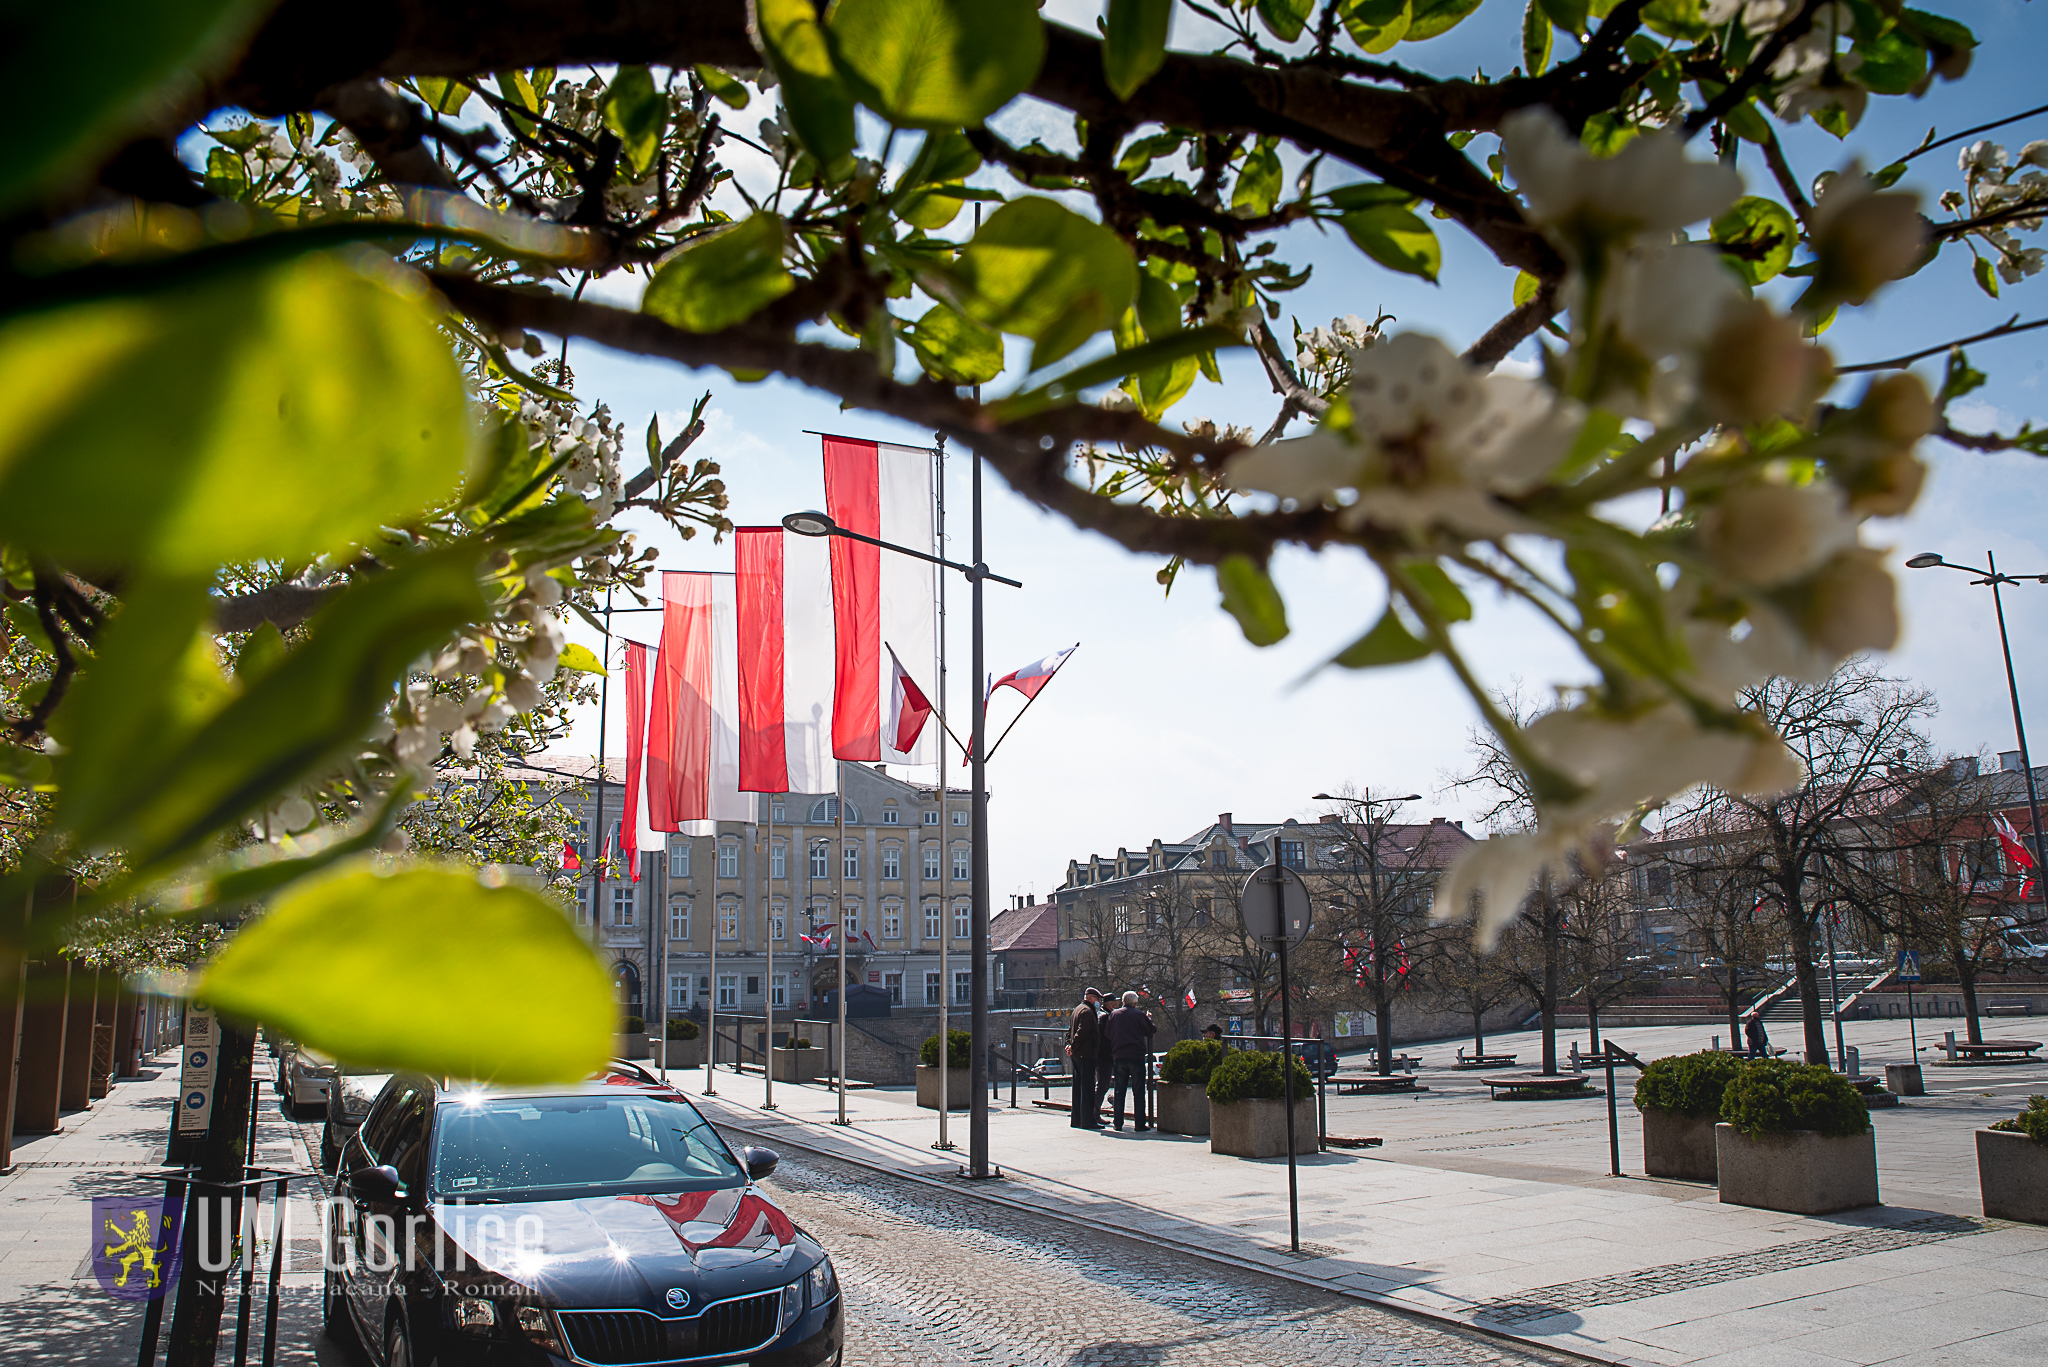 Rynek w gorlicach udekorowany polskimi flagami